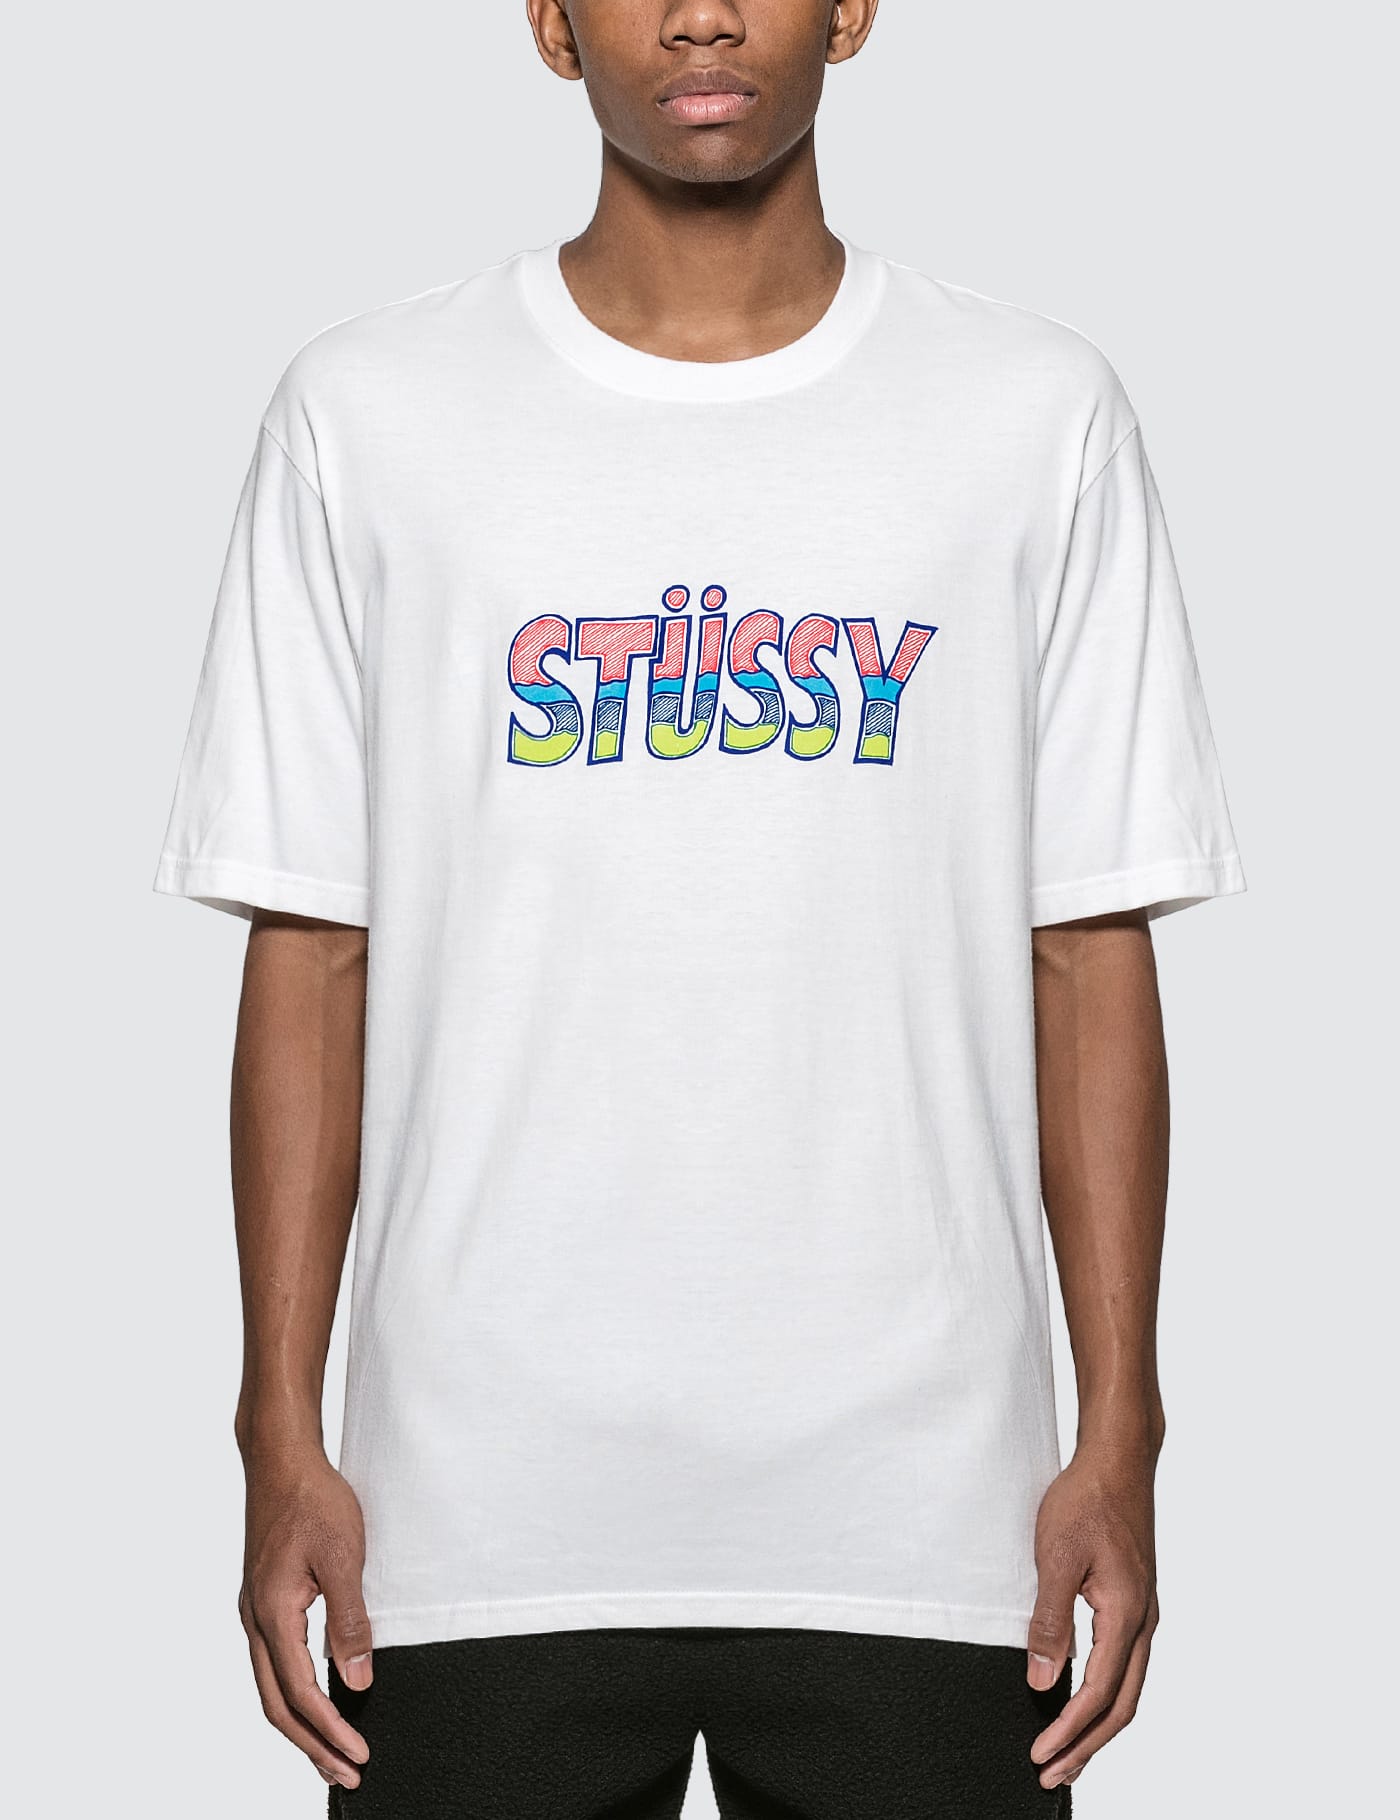 Stussy T Shirt Size Chart